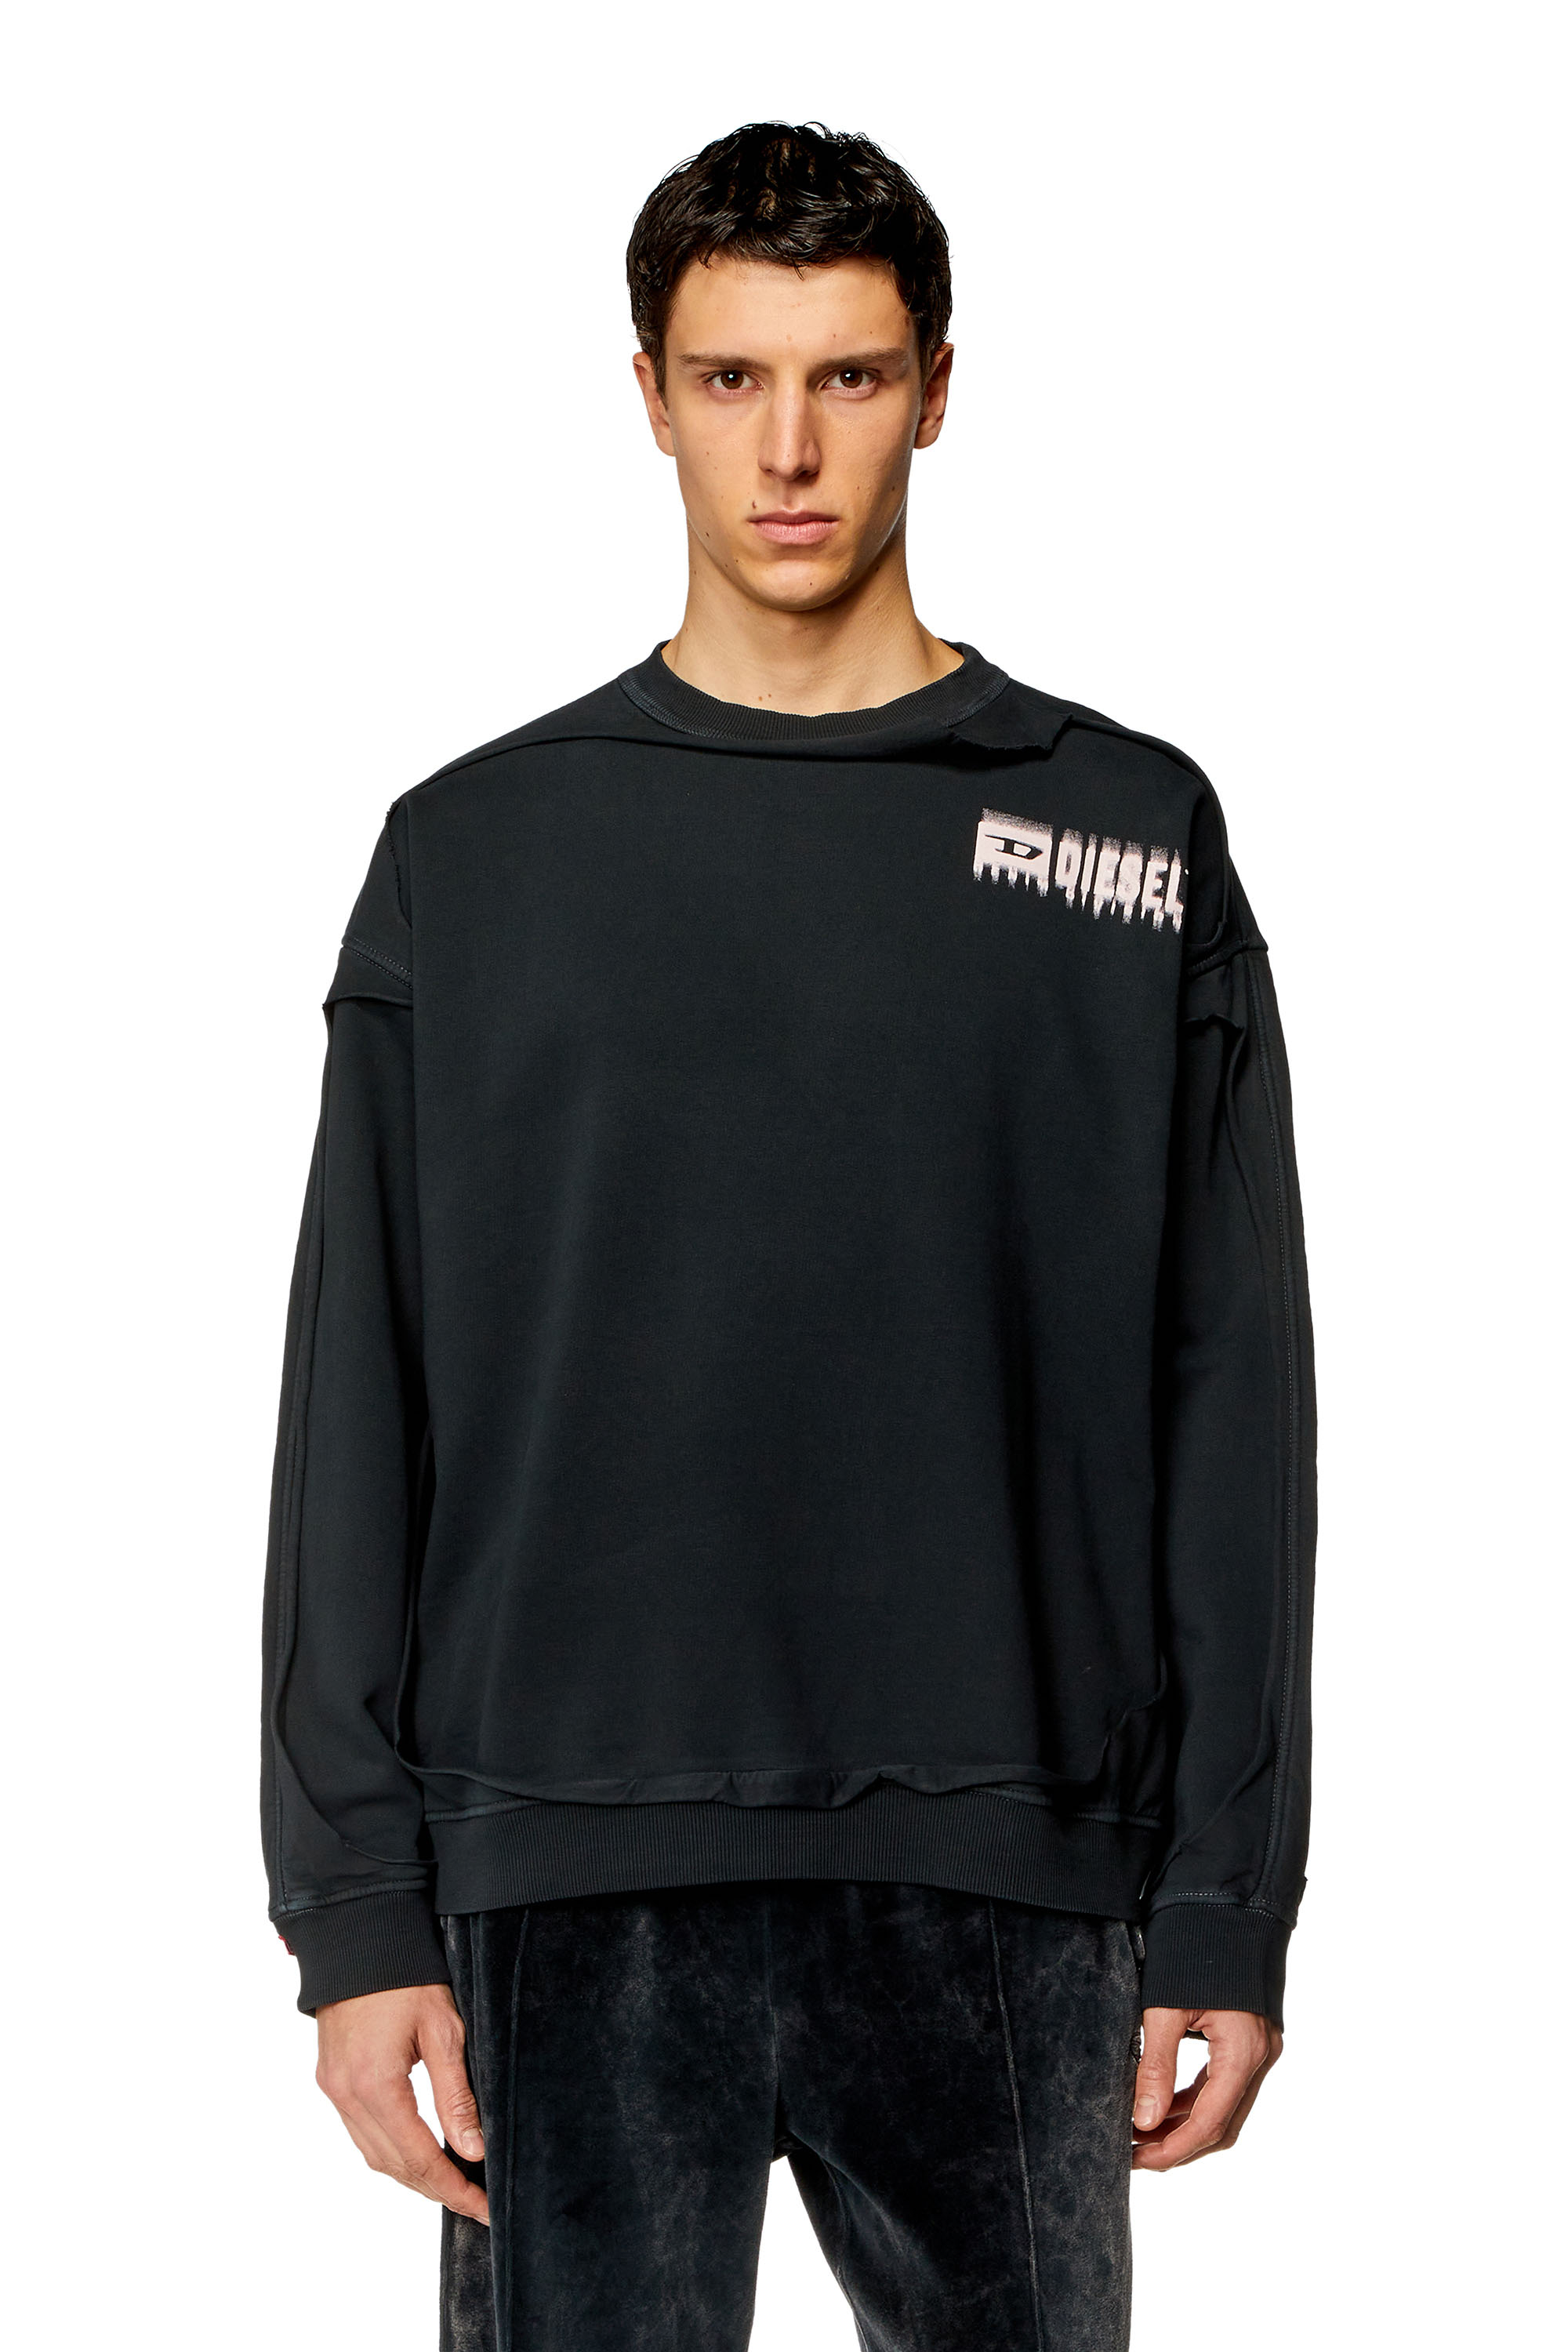 Diesel - Sweatshirt mit Peel off-Effekt - Sweatshirts - Herren - Schwarz